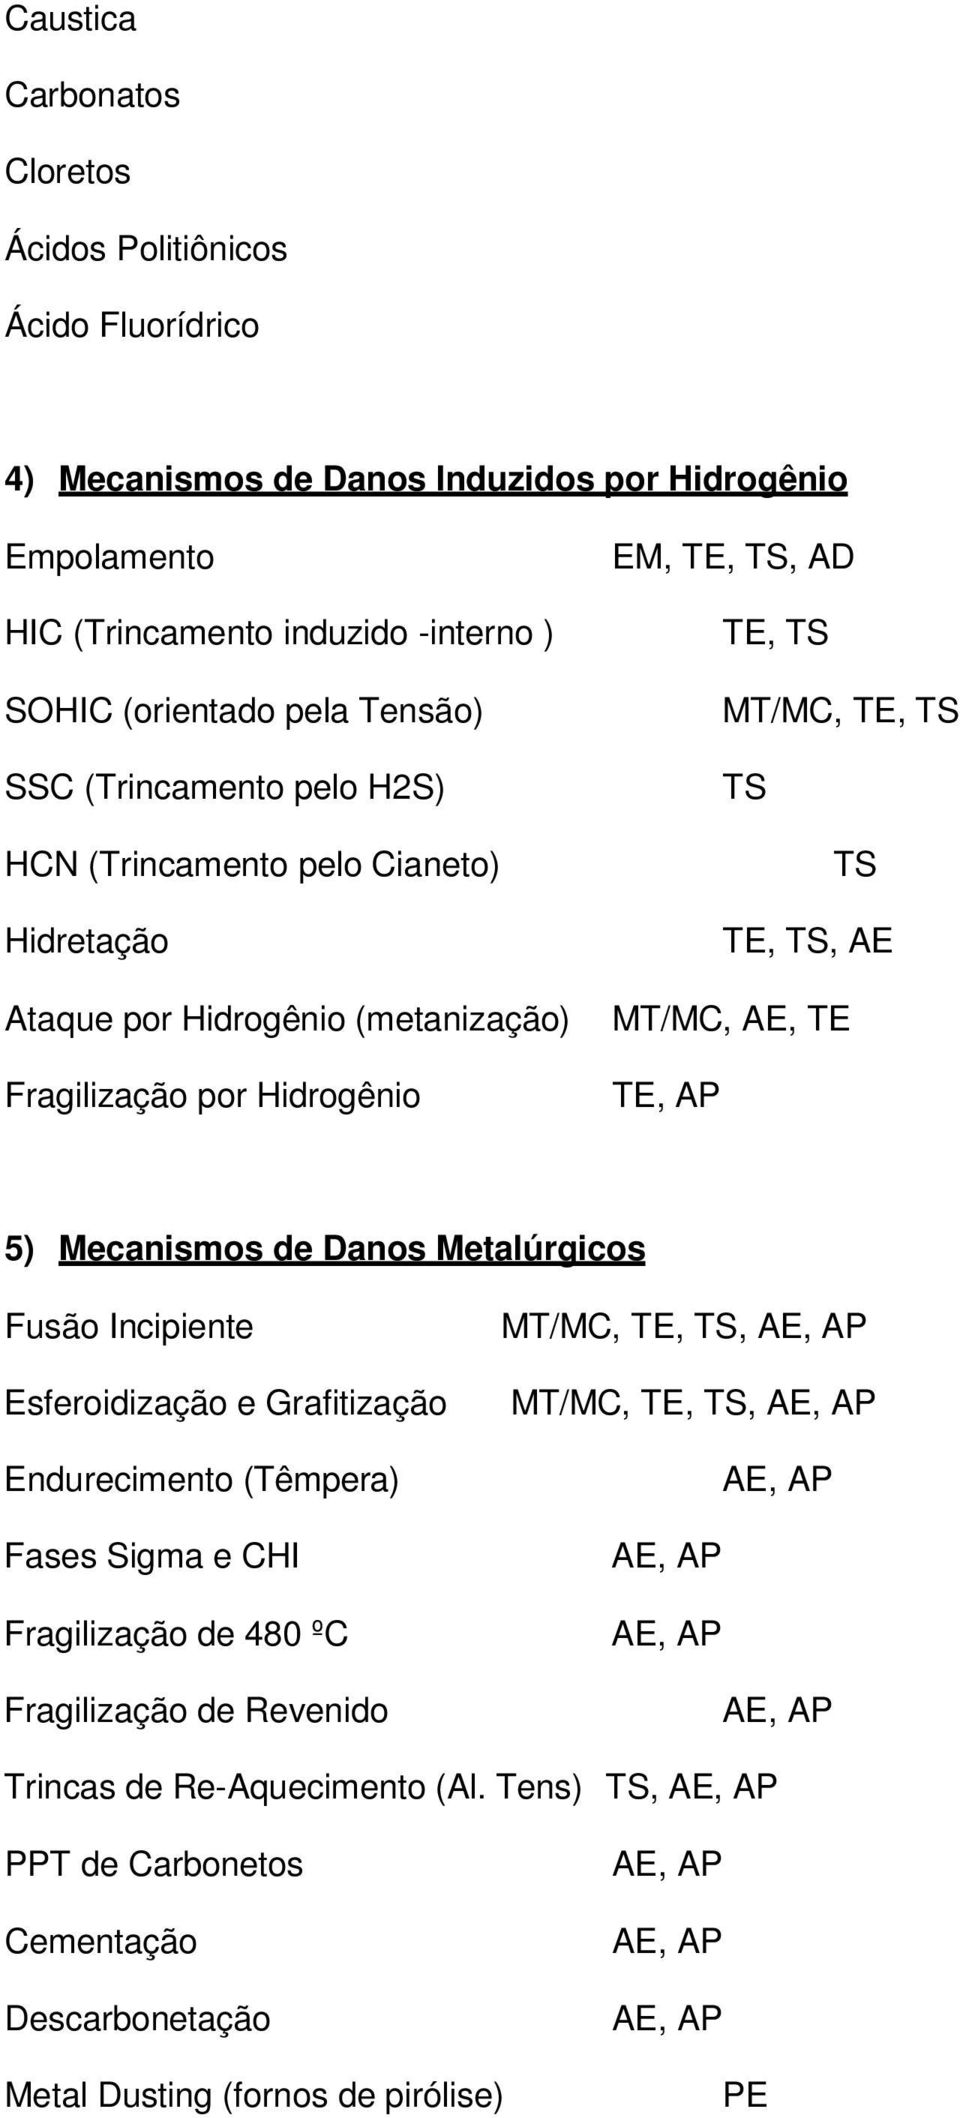 TS TS TE, TS, AE MT/MC, AE, TE TE, AP 5) Mecanismos de Danos Metalúrgicos Fusão Incipiente Esferoidização e Grafitização Endurecimento (Têmpera) Fases Sigma e CHI Fragilização de